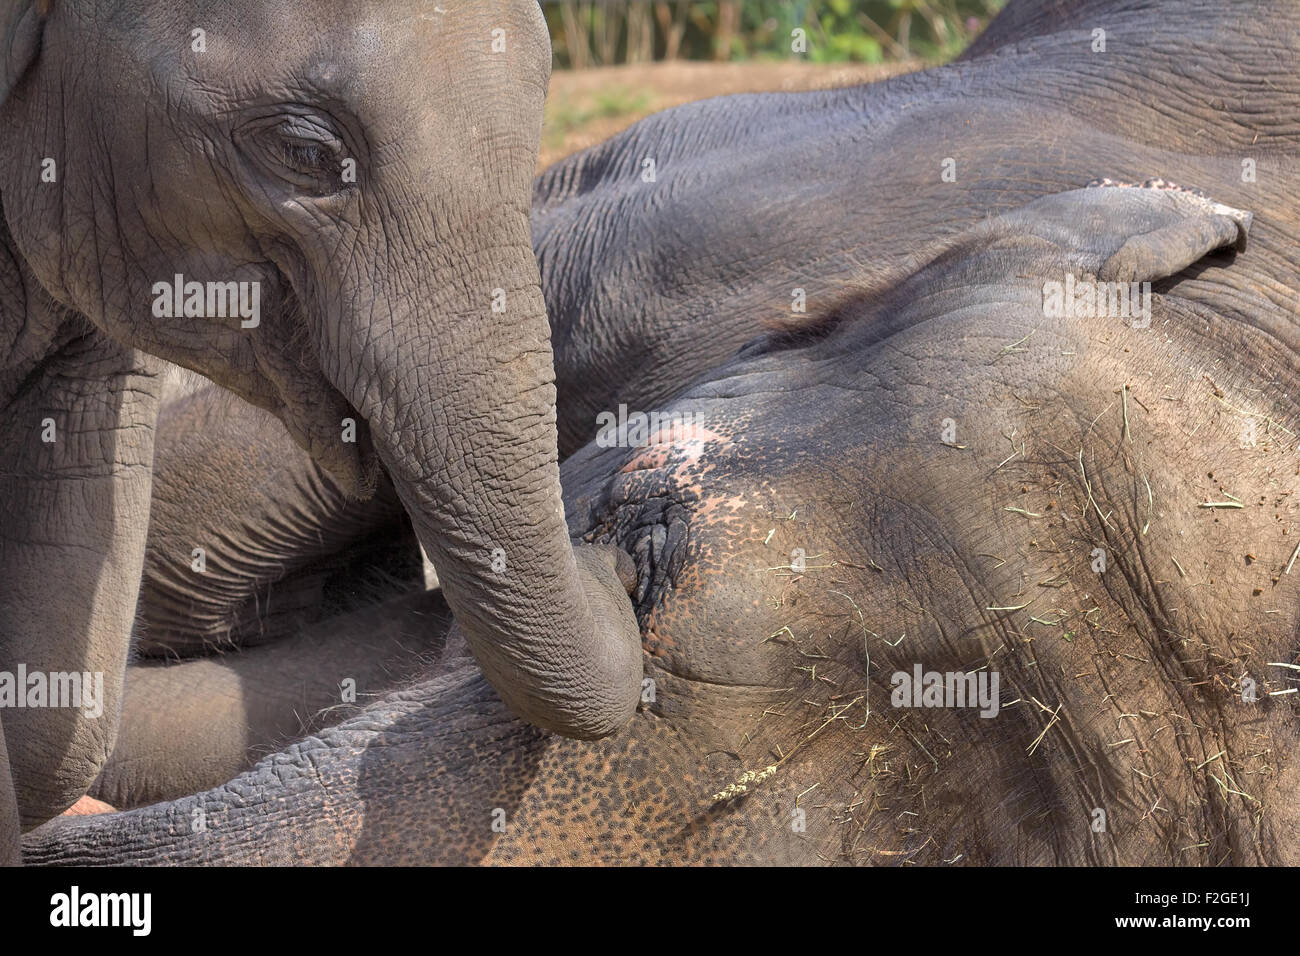 Asiatische Elefantenbaby mit schlafenden Mutter Elefant Closeup Portrait Stockfoto